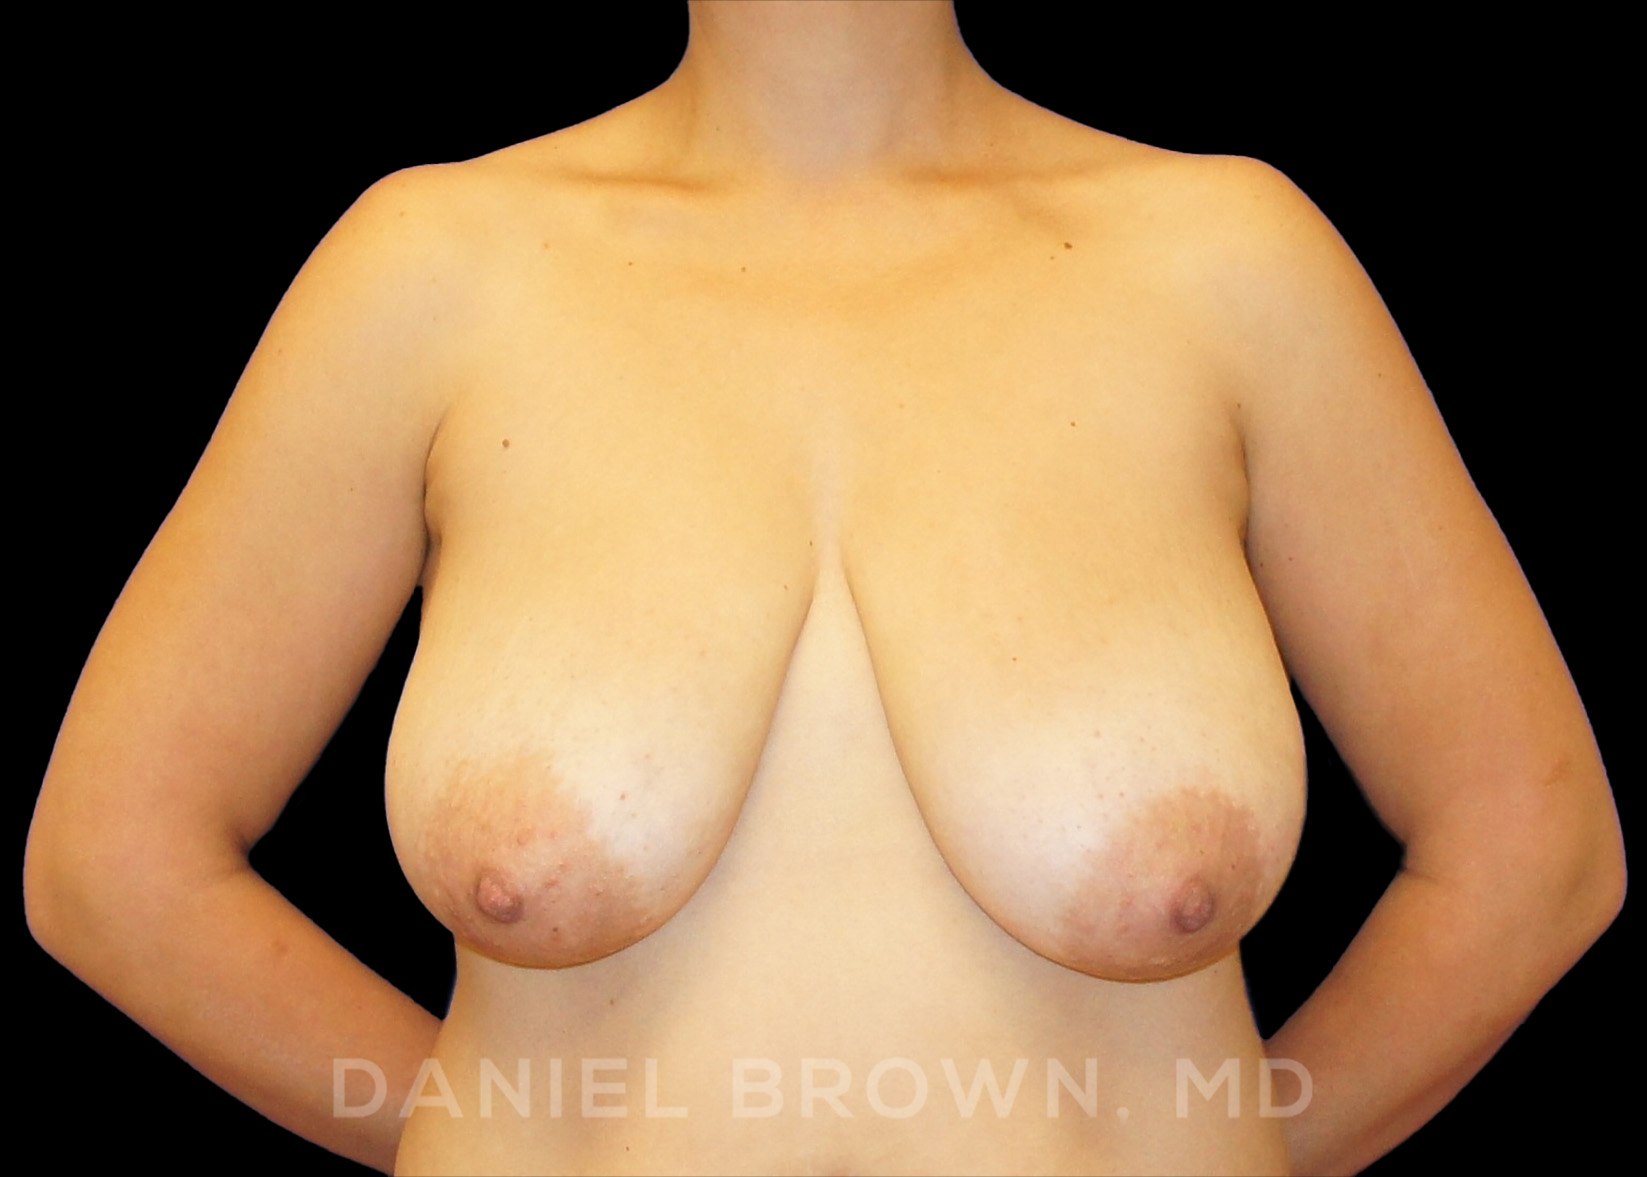 Breast Reduction, Daniel Brown M.D